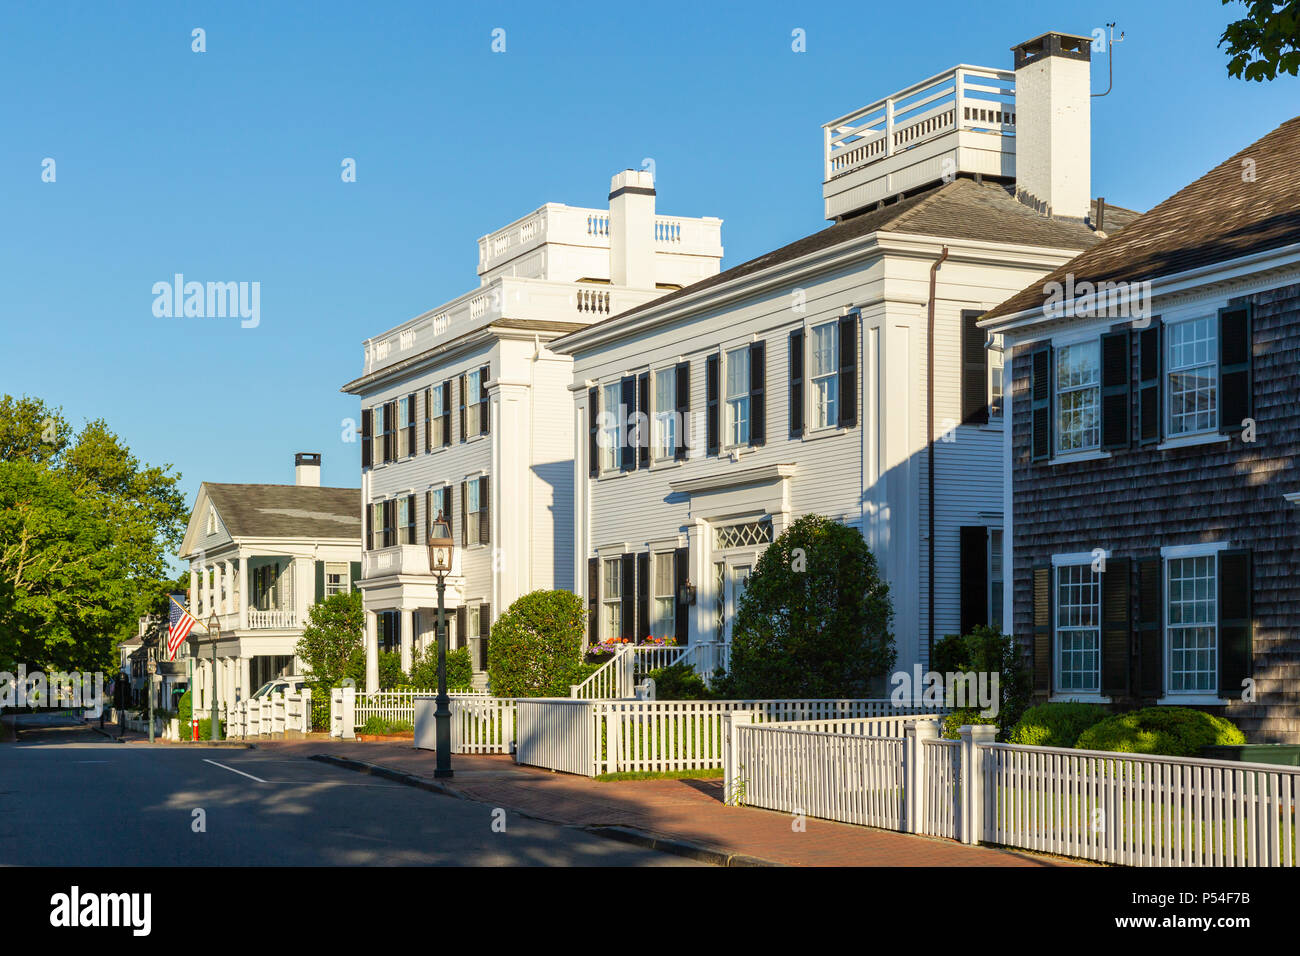 Herrenhäuser Weiße Schindeln Kapitäne" zusammen N Water Street in Chatham, Massachusetts auf Martha's Vineyard. Stockfoto